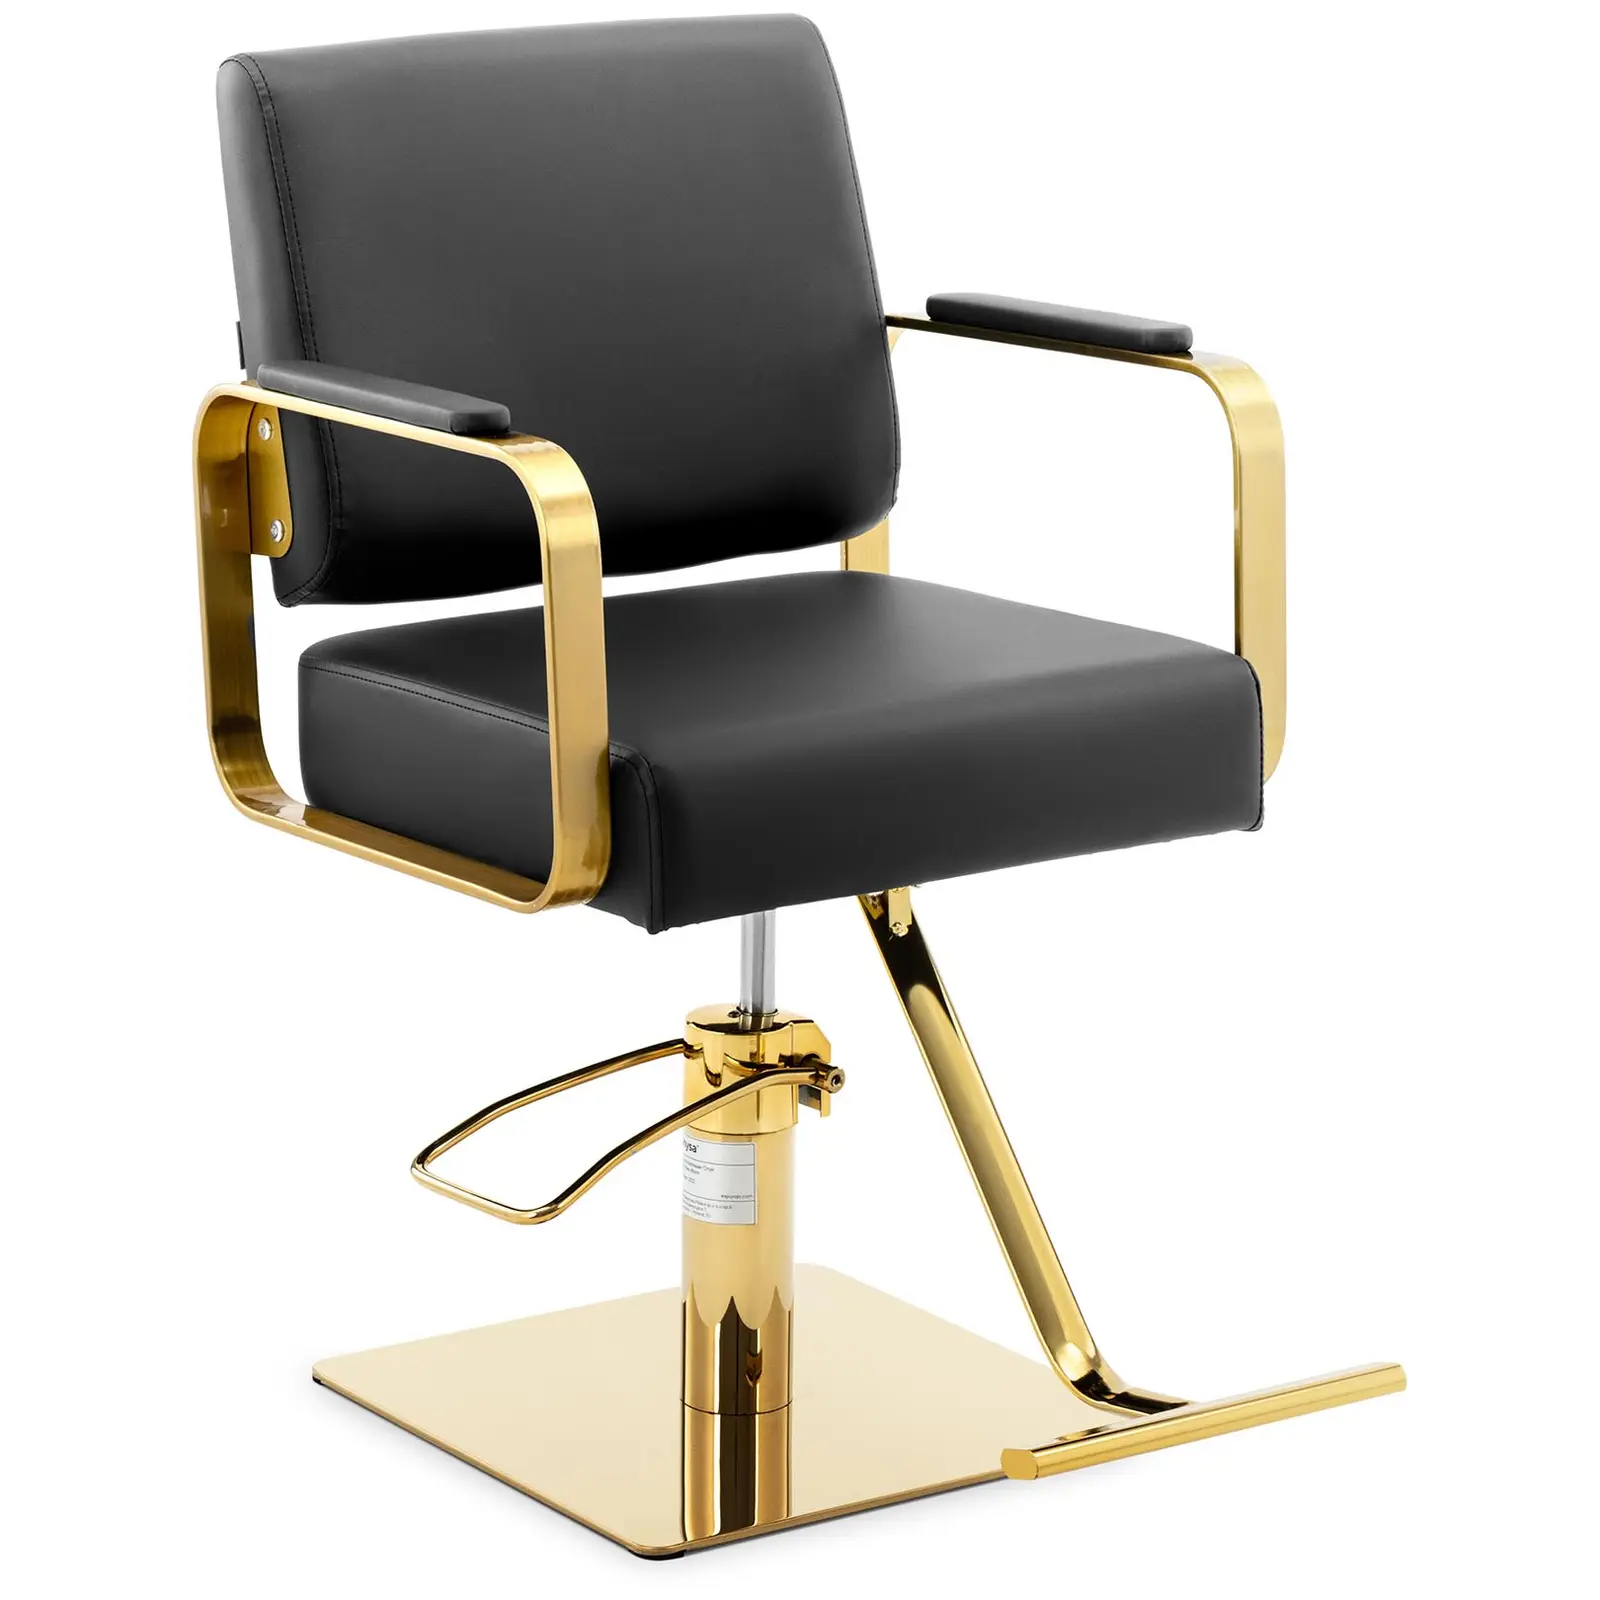 Produtos recondicionados Cadeira de cabeleireiro com apoio para os pés - 900 - 1050 mm - 200 kg - Preto, Dourado